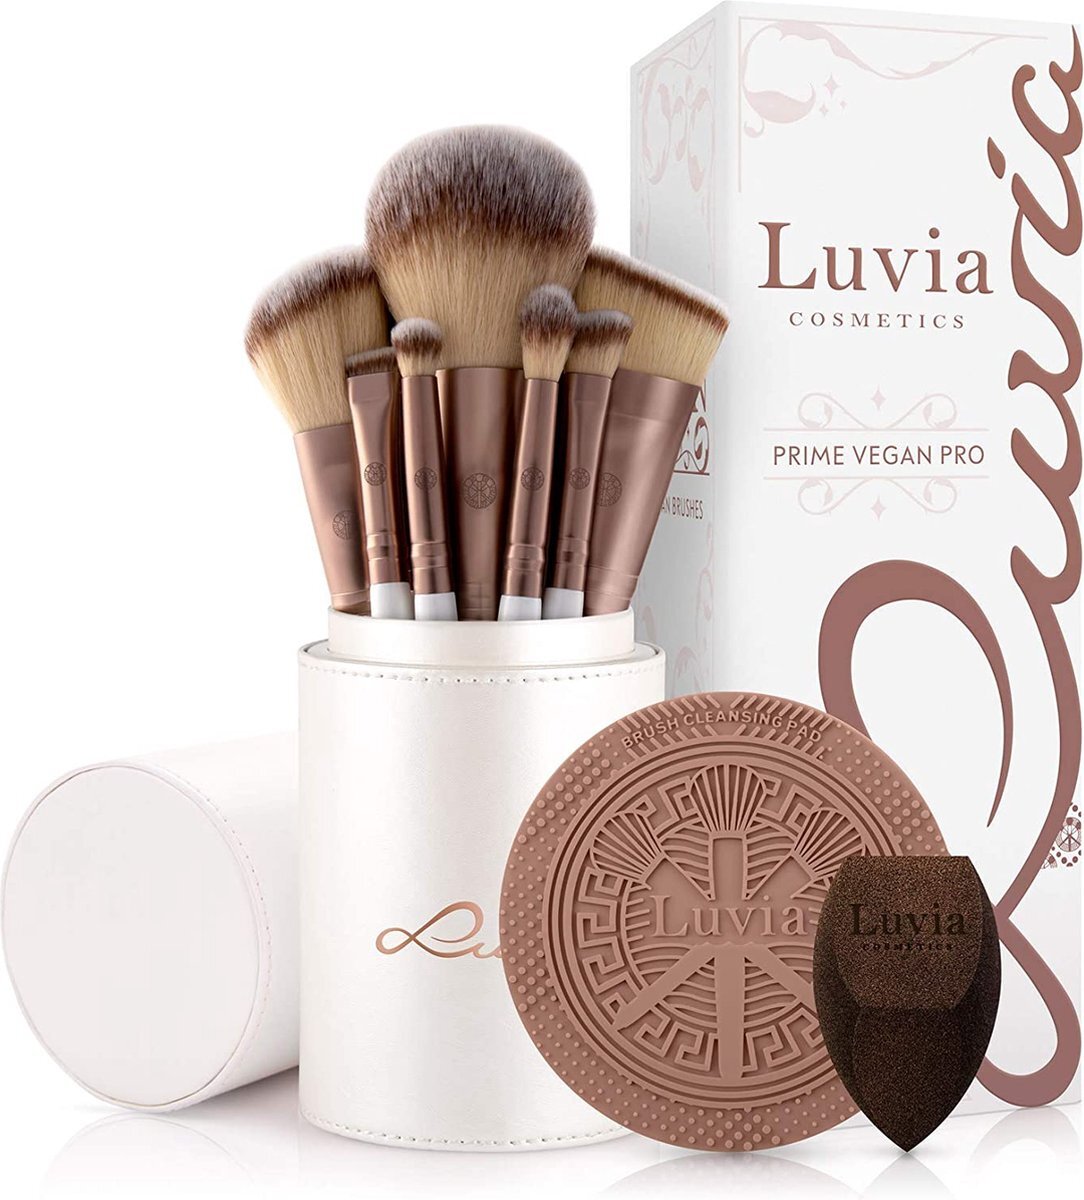 Luvia Cosmetics Luvia, Prime Vegan Pro, make-upkwastenset, 12 make-upkwasten, inclusief borstelopslag, blender spons en reinigingsmat voor cosmetische kwasten, parelmoer en koffie